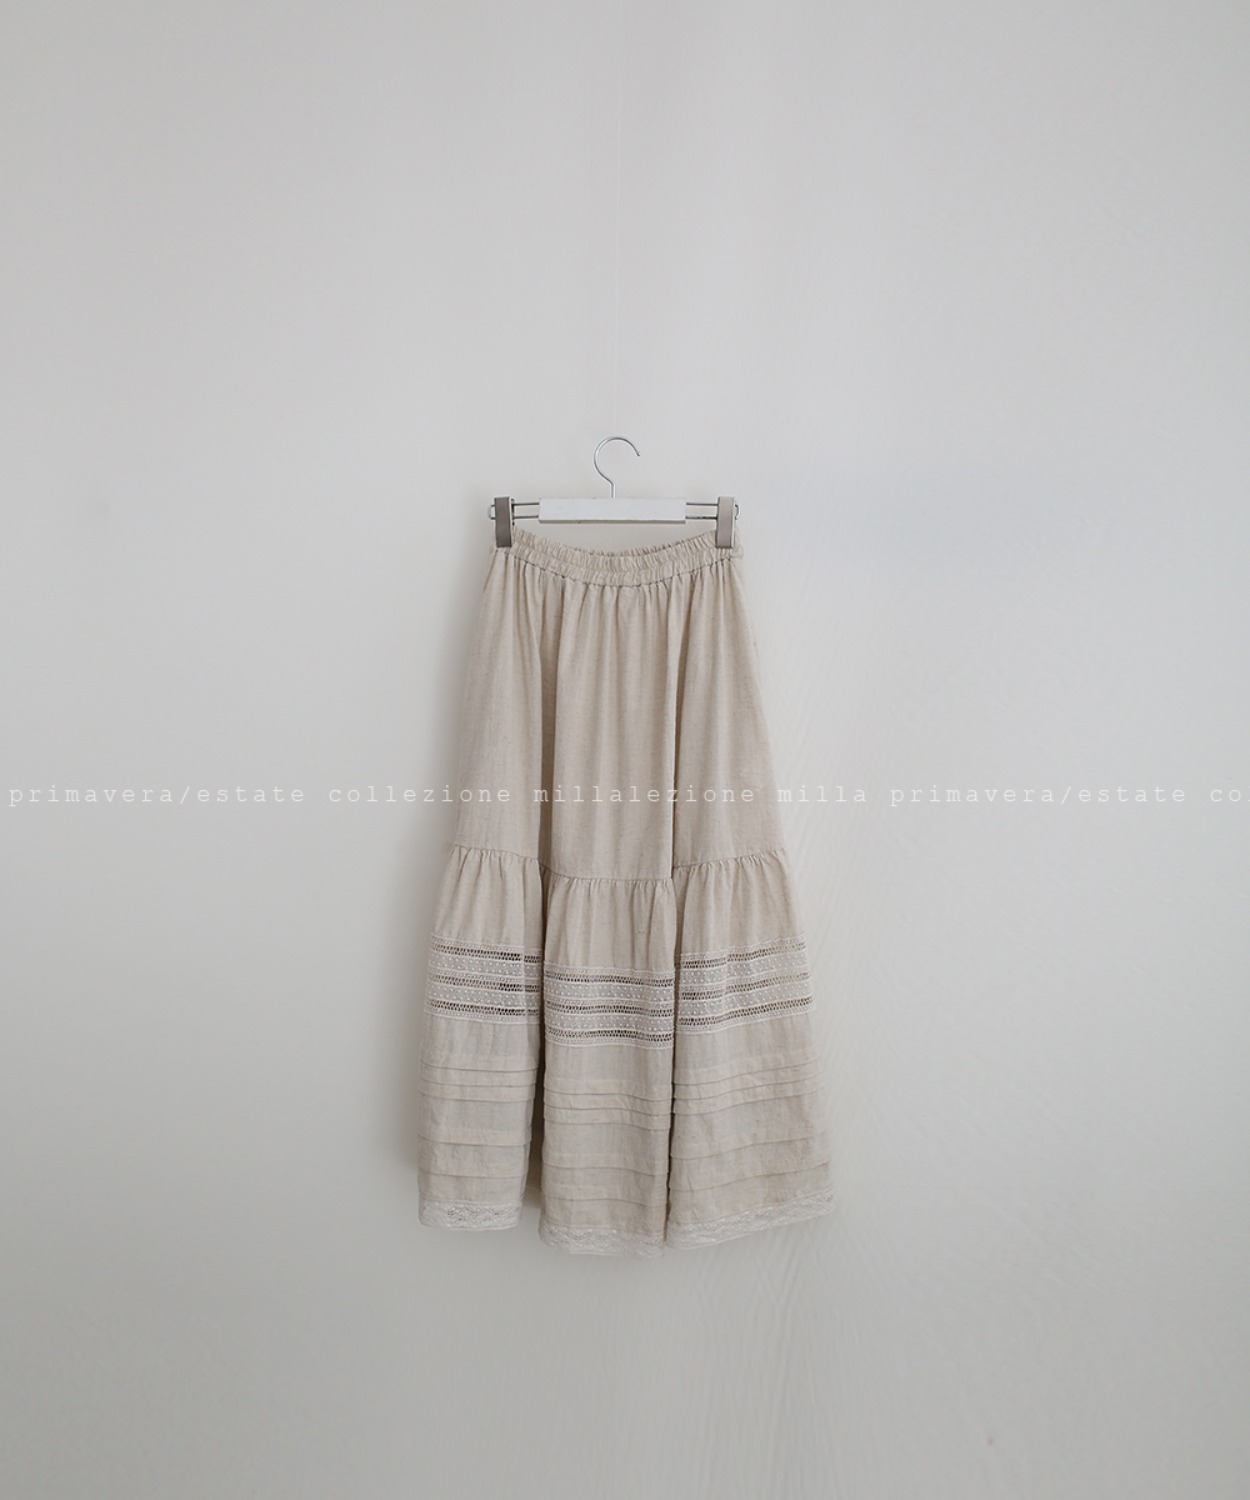 N°022 skirt